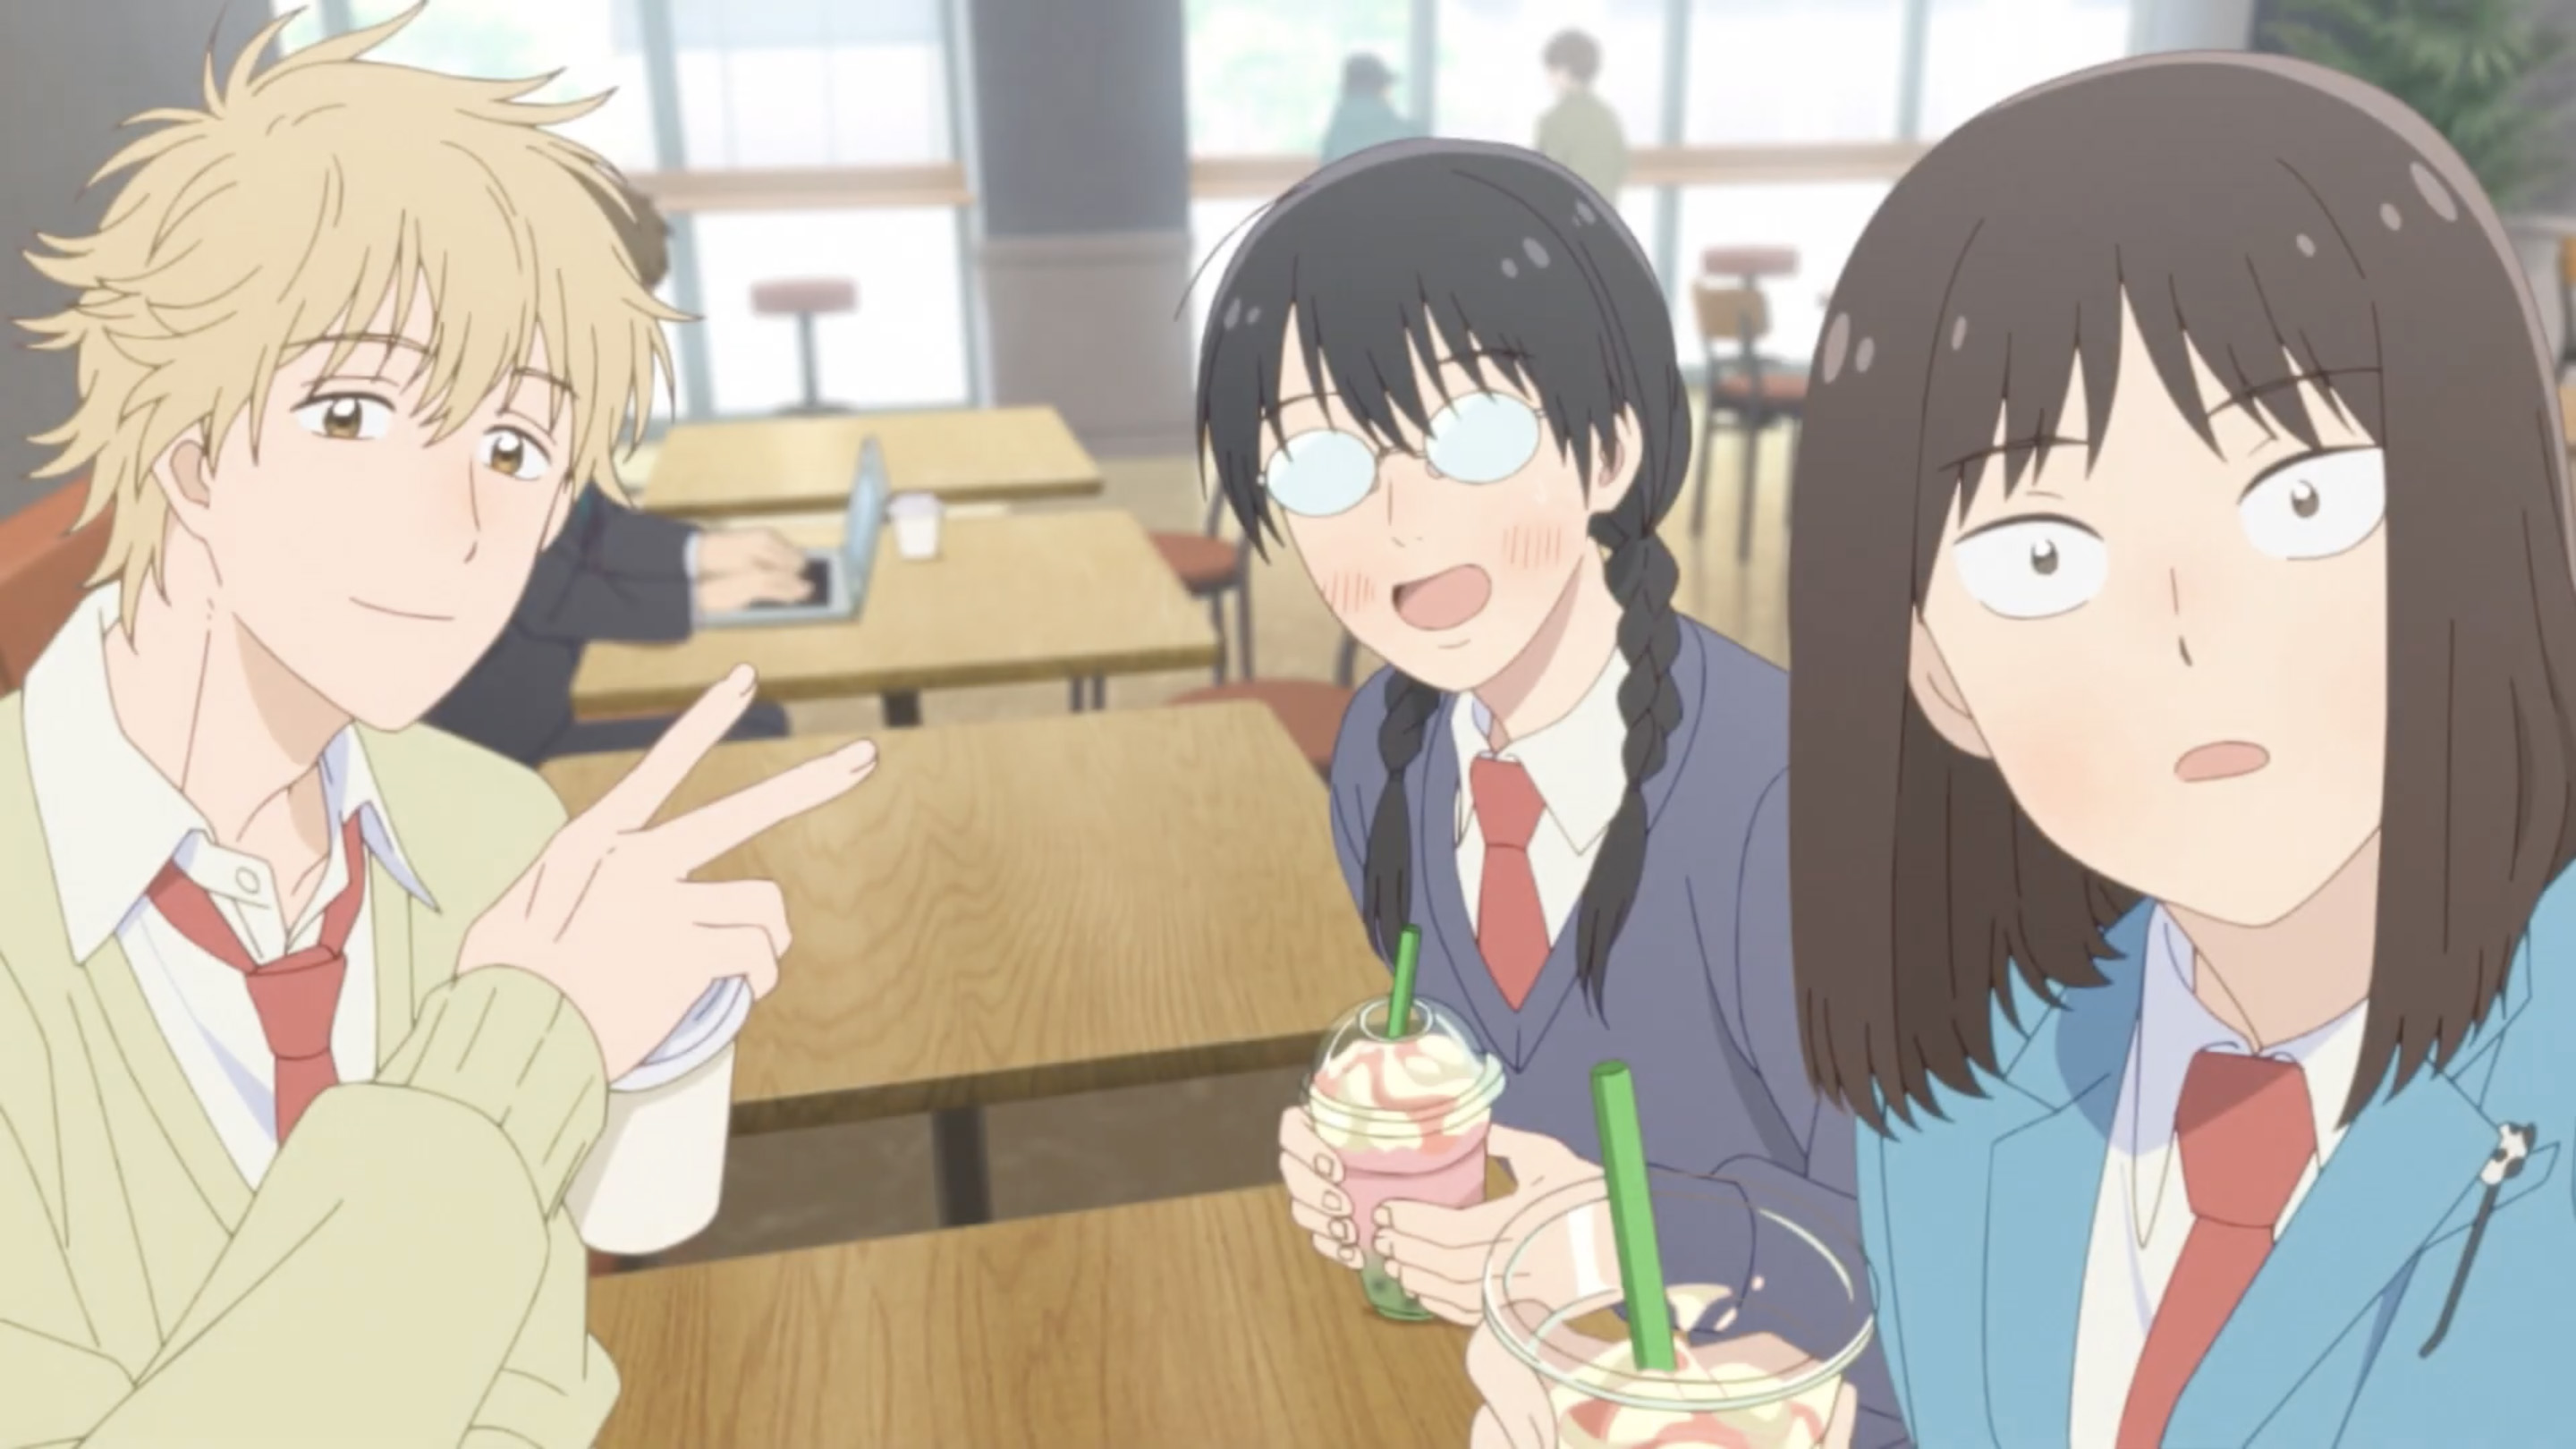 A vida no ensino médio é maluca em nova prévia do anime Skip and Loafer -  Crunchyroll Notícias